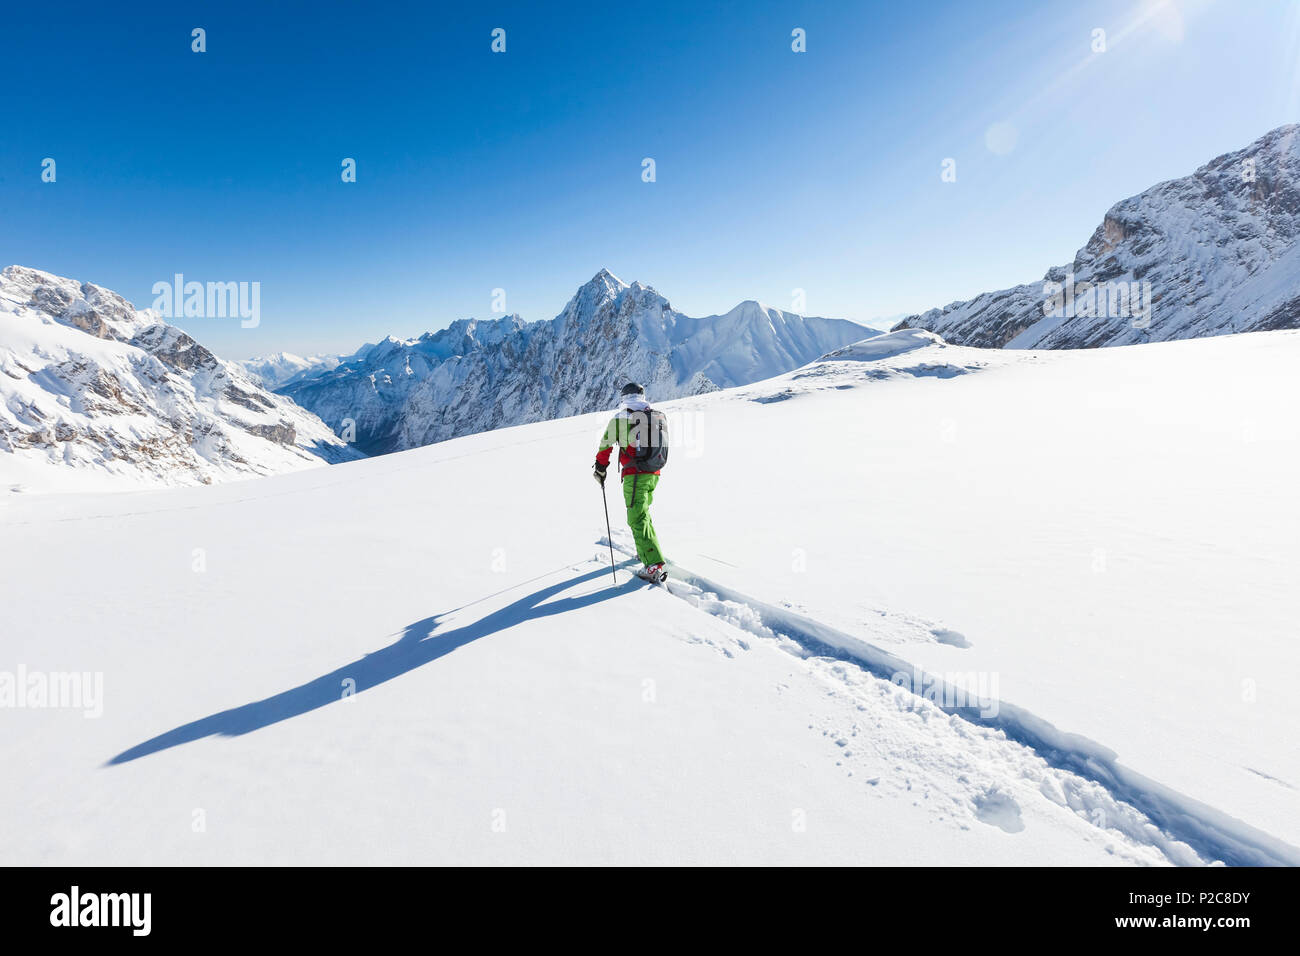 skier in deep powder snow, Zugspitze, overlooking Reintal Valley and Hochwanner, Upper Bavaria, Germany Stock Photo